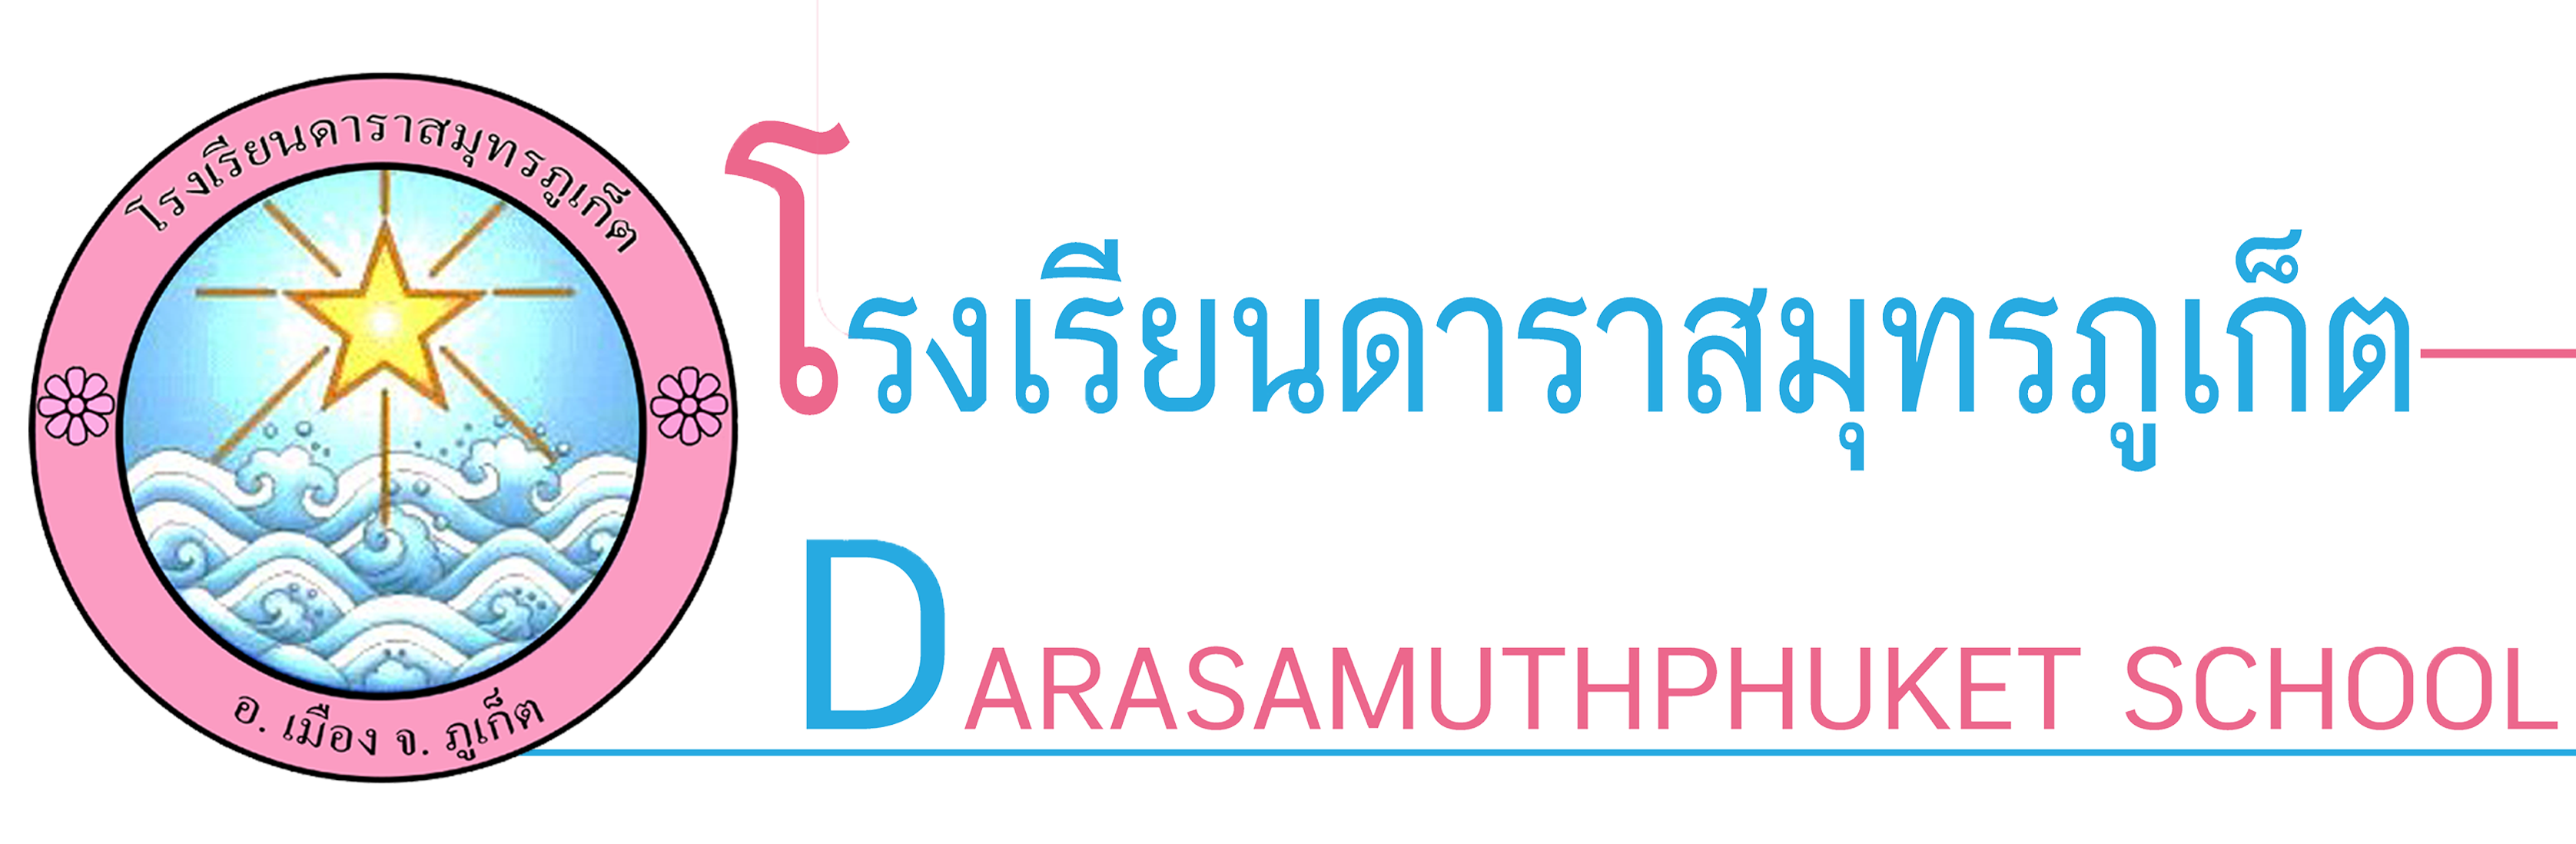 Darasamuthphuket